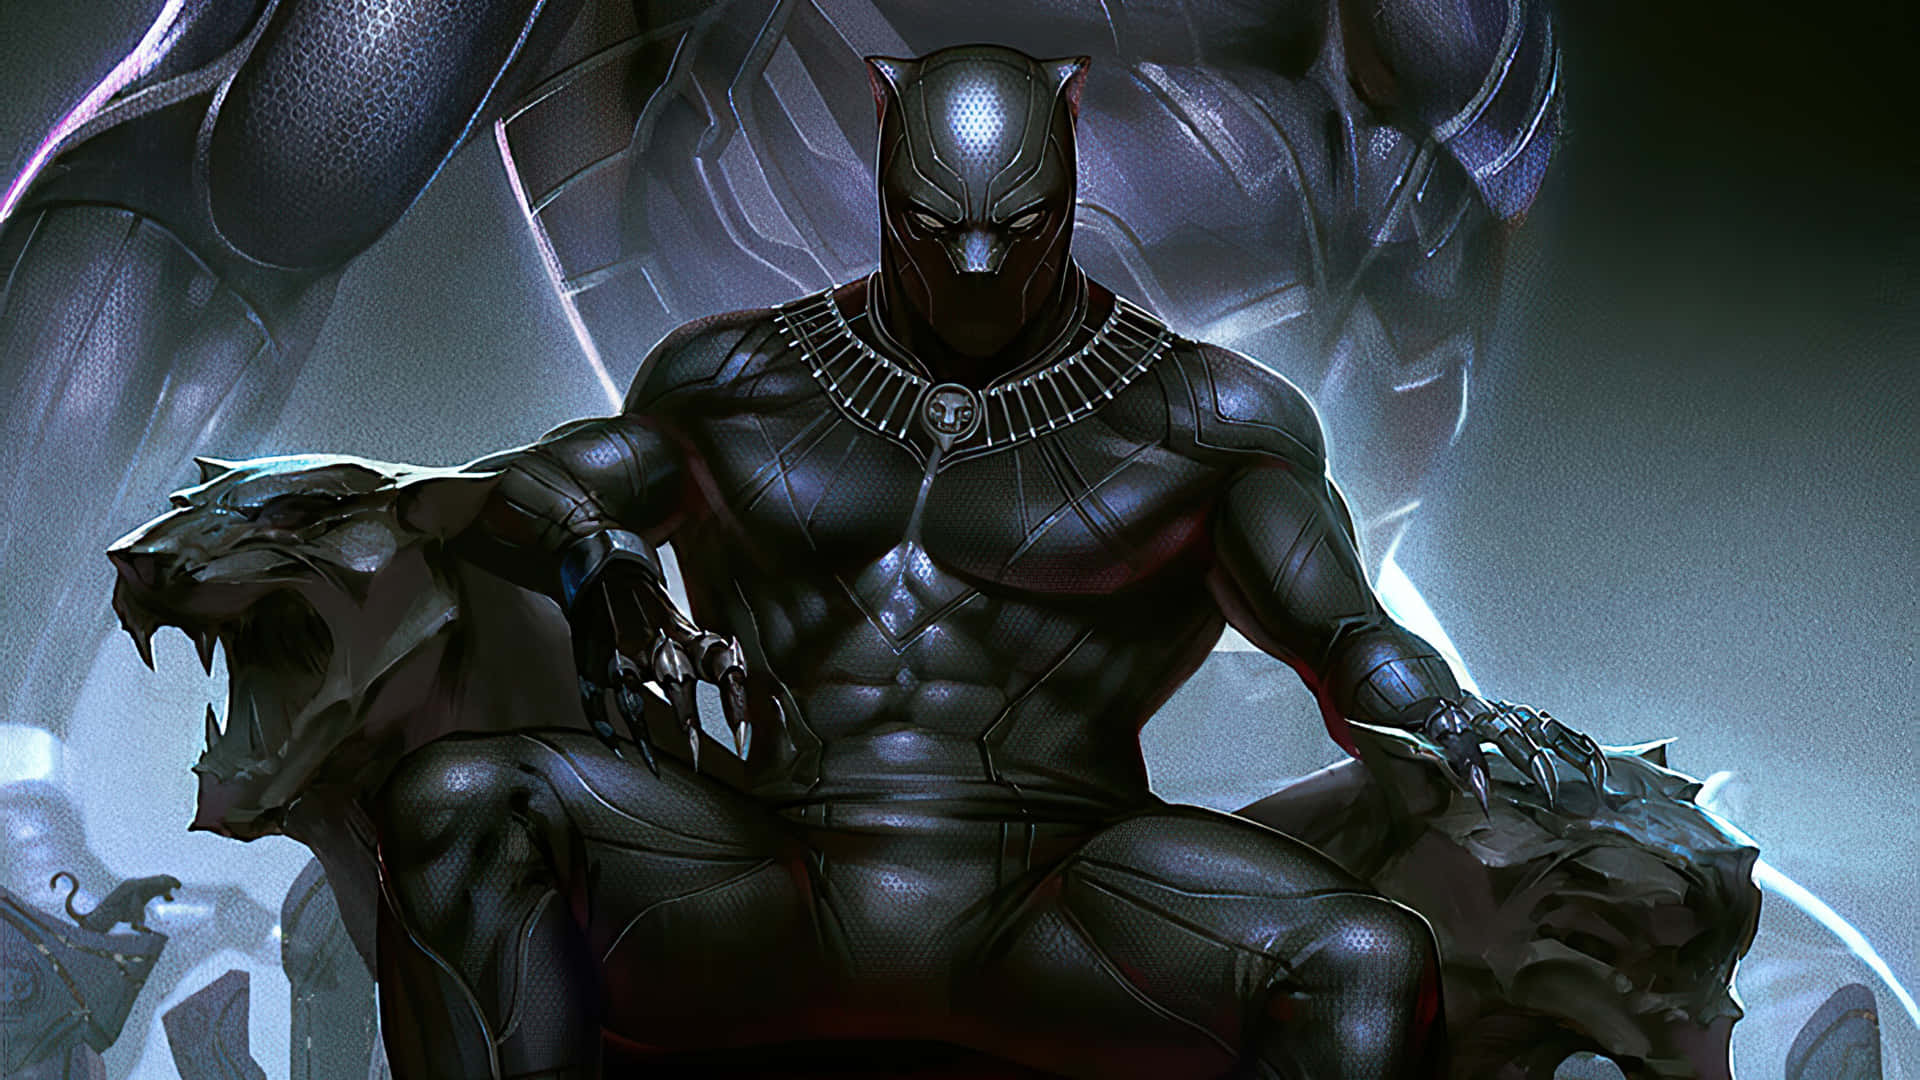 Billeder af Black Panther dekorerer denne tapet.